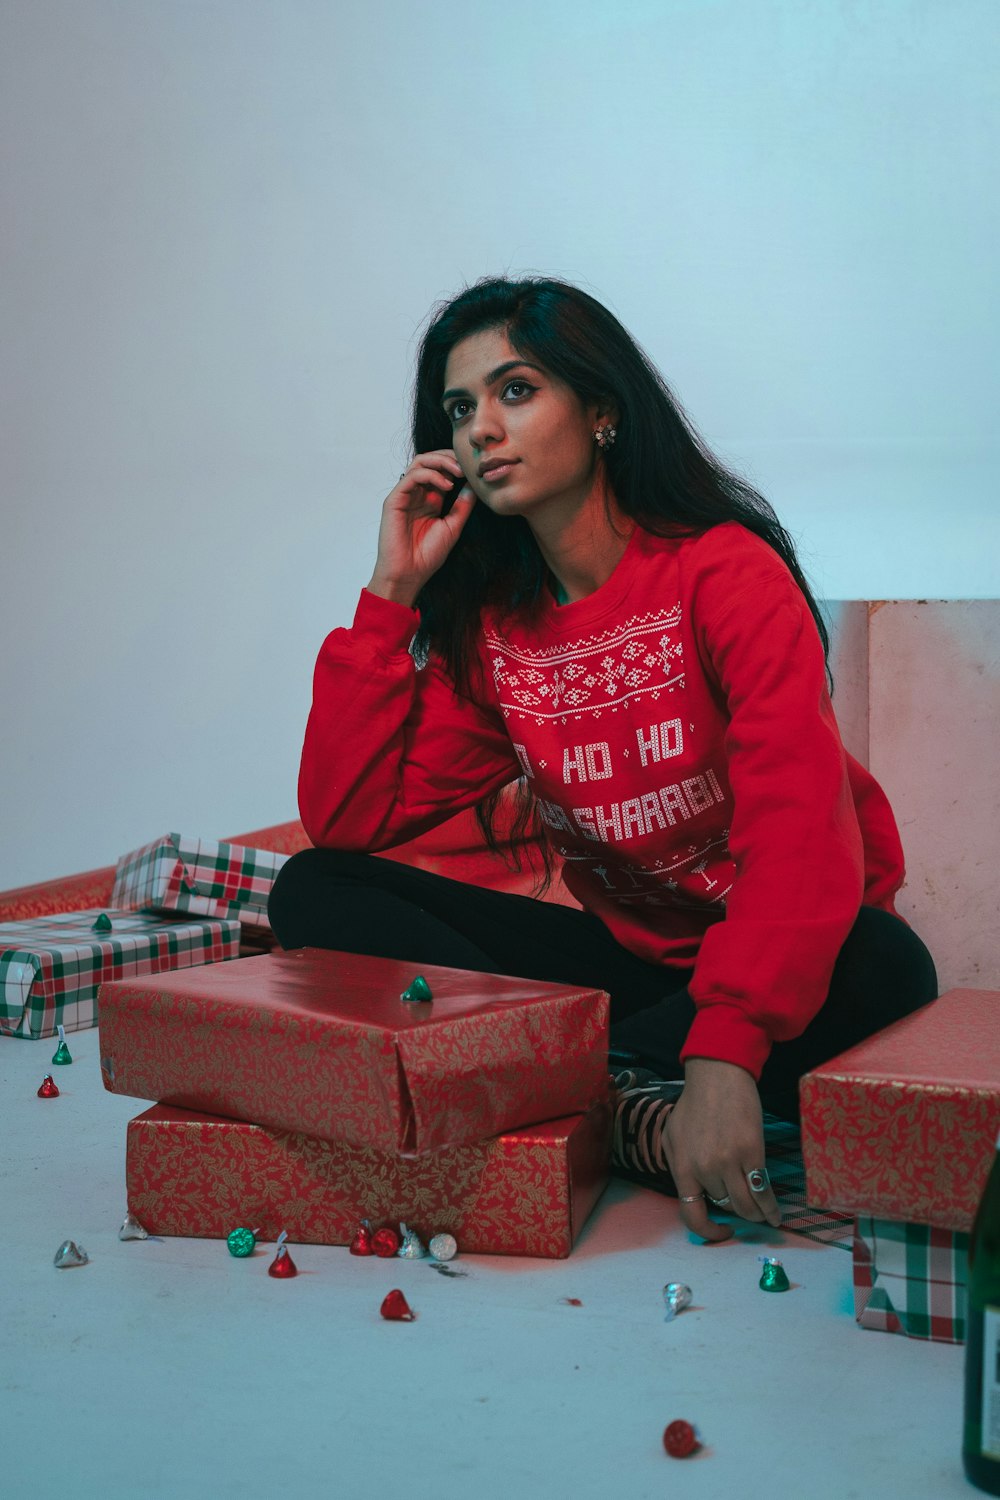 Une femme en pull rouge assise sur une pile de cadeaux